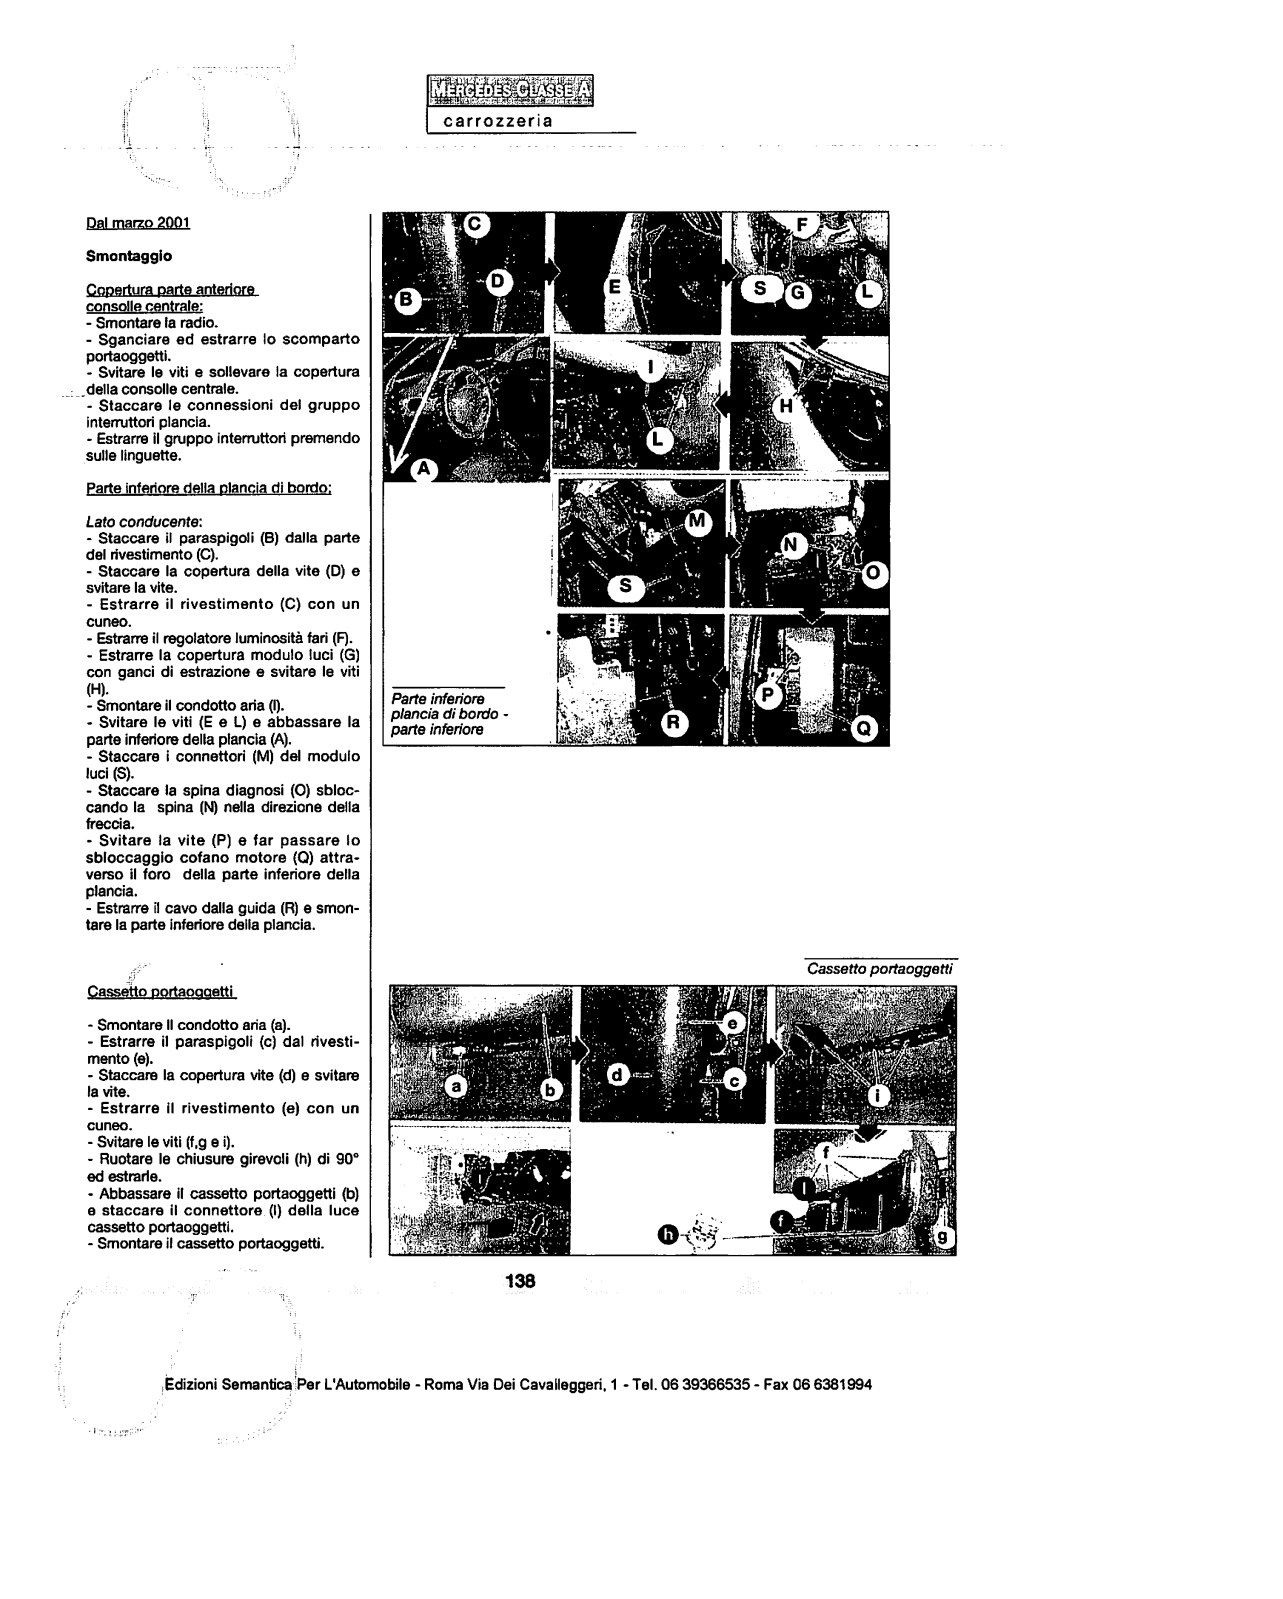 w168 - (W168): Manual técnico - tudo sobre - 1997 a 2004 - italiano 2la78d0